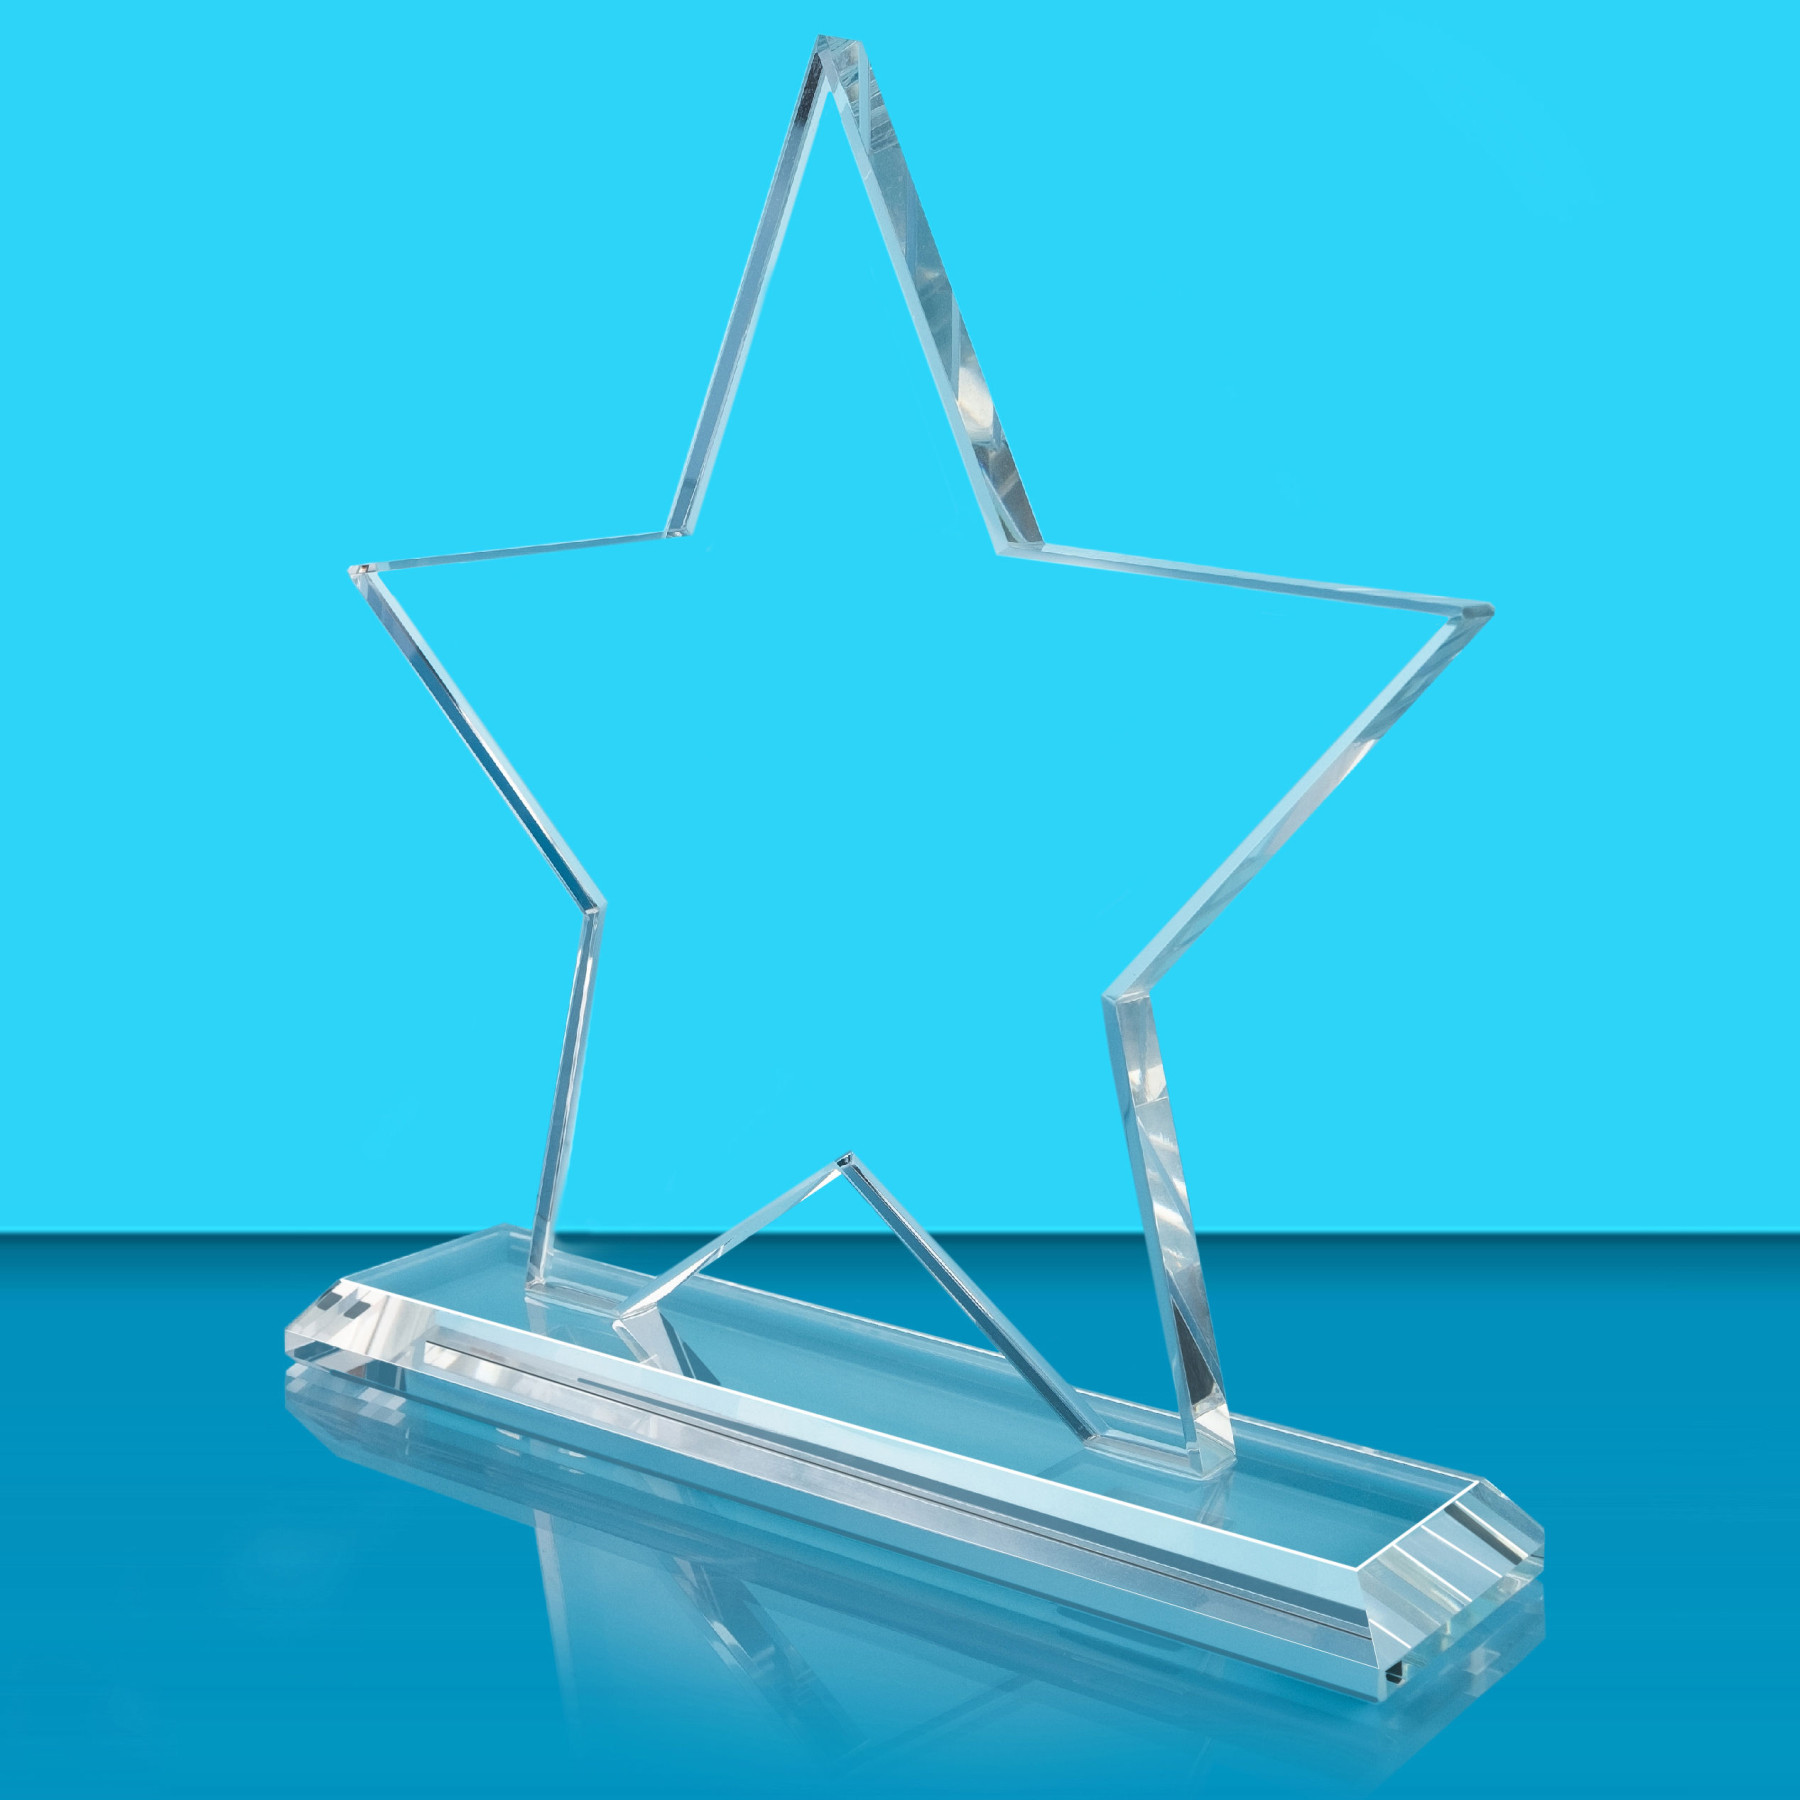 Clear Crystal Star Award in Black Presentation Box